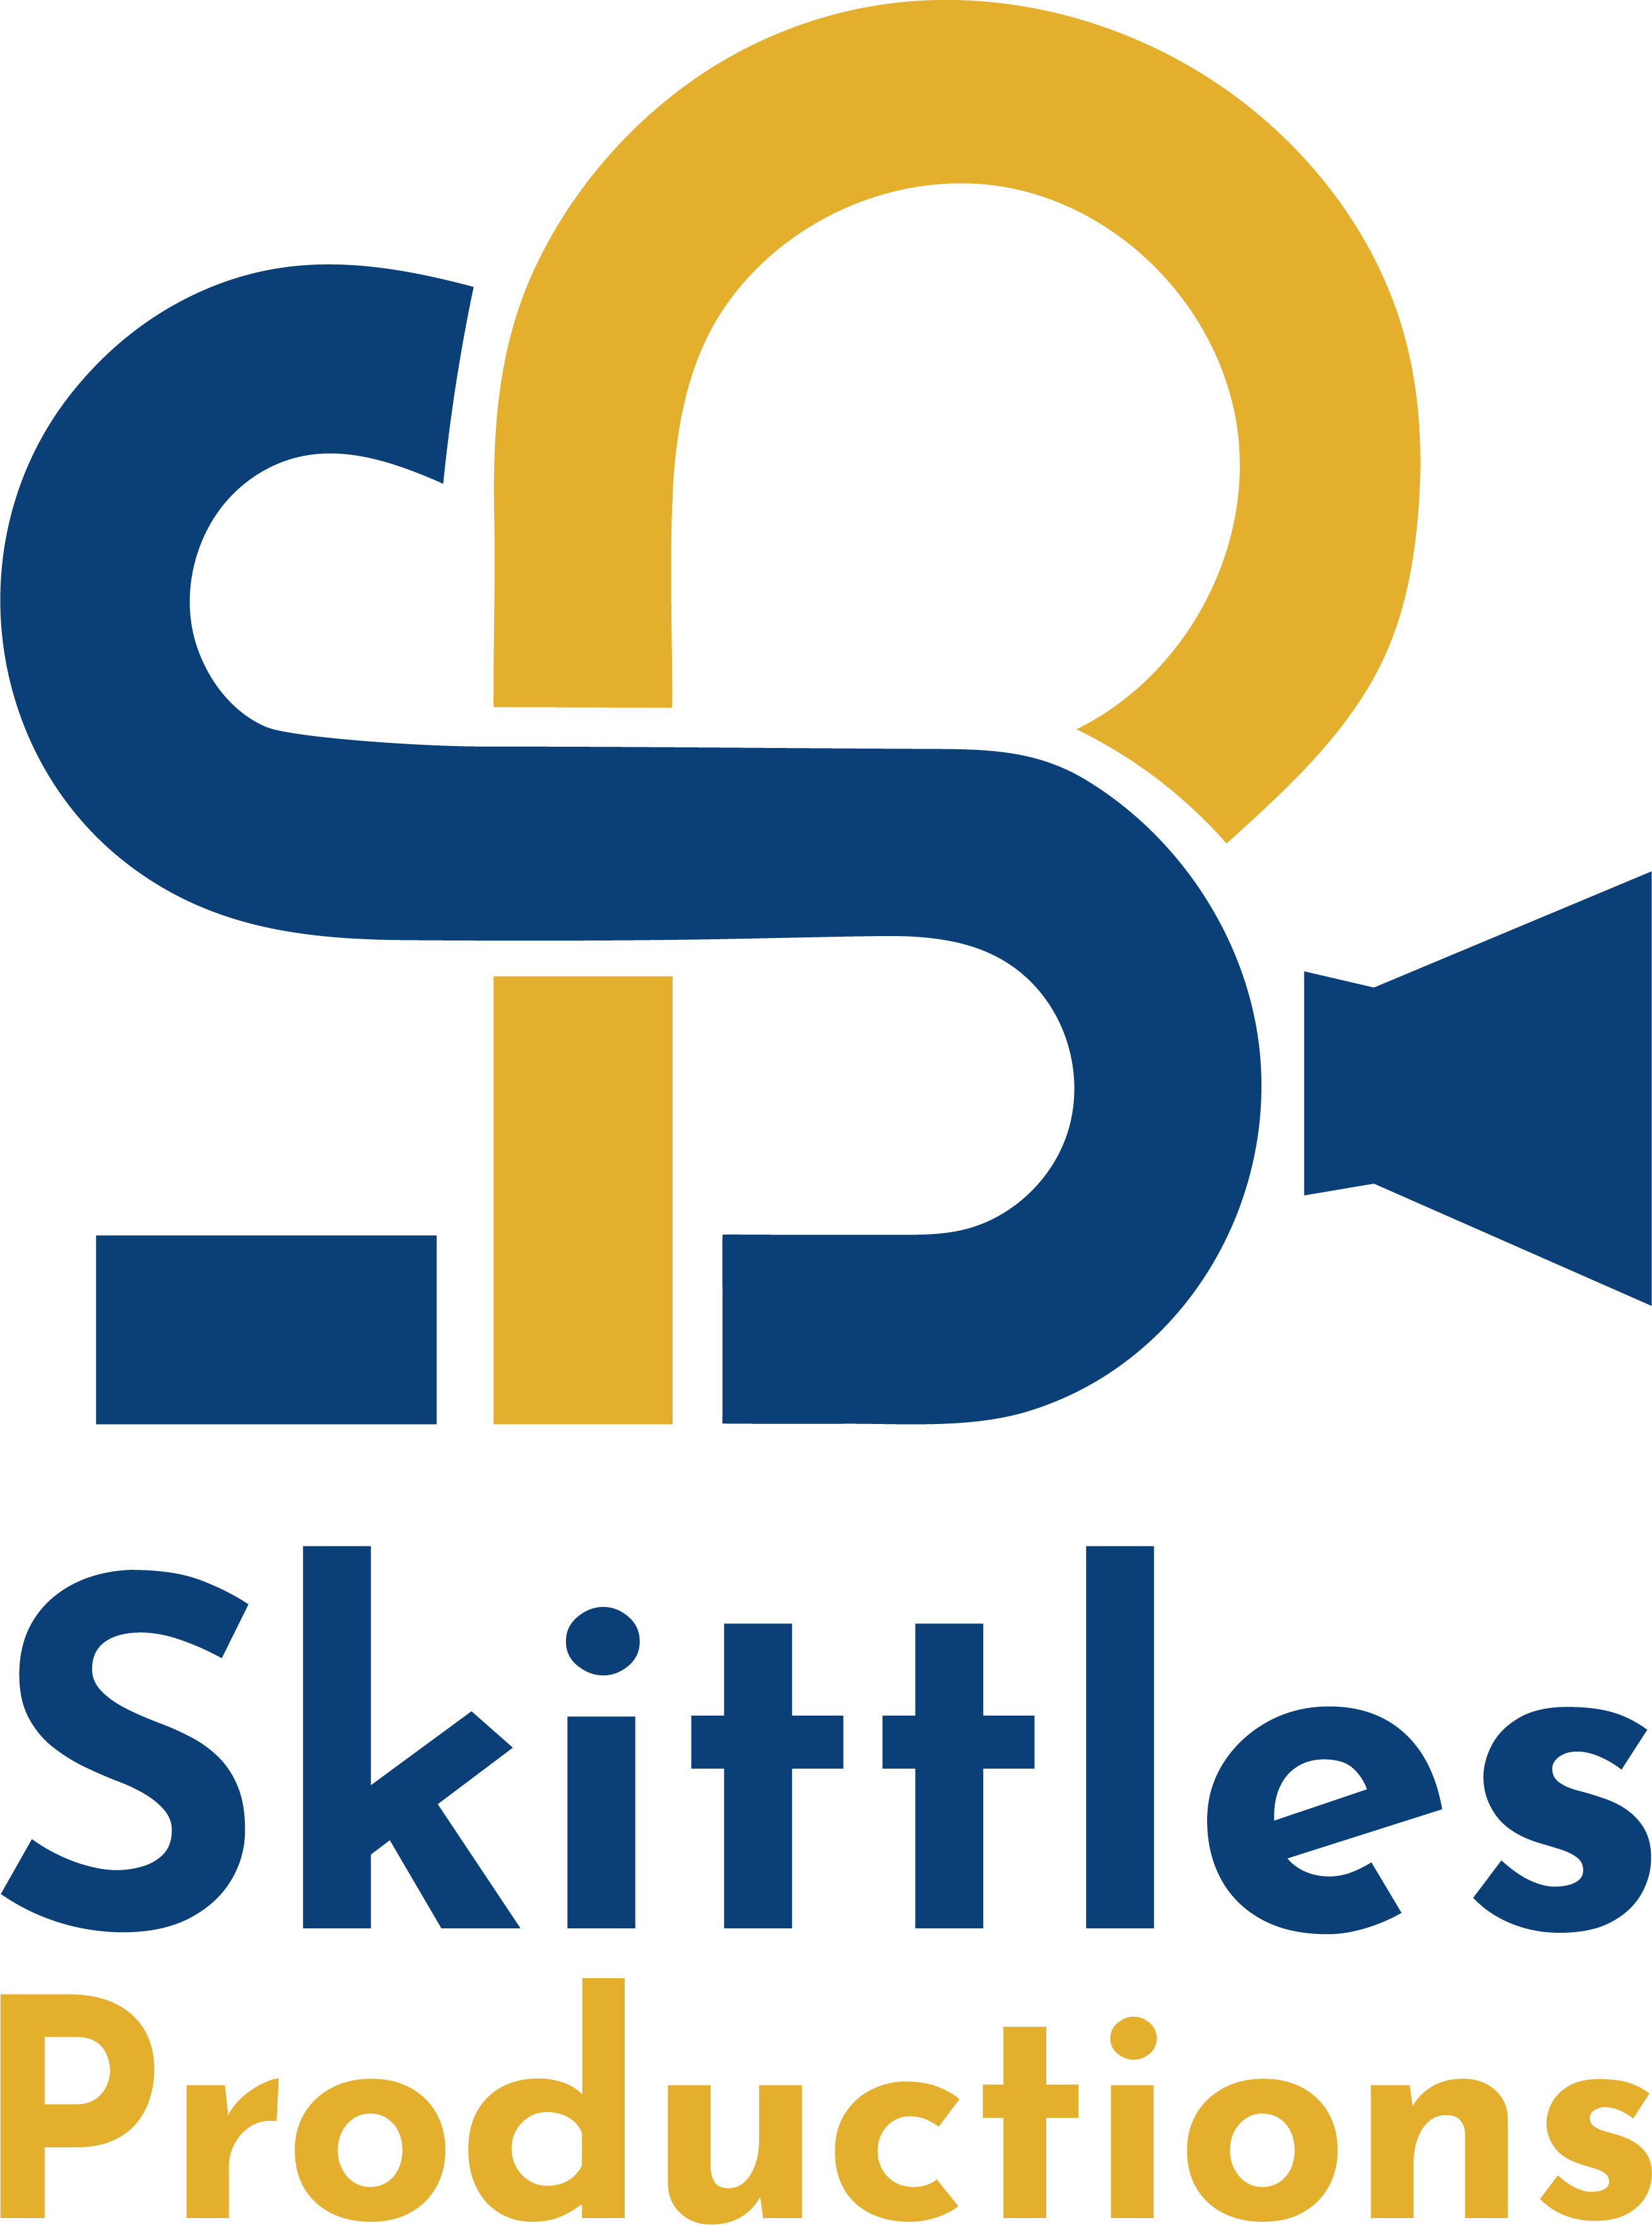 skittles logo